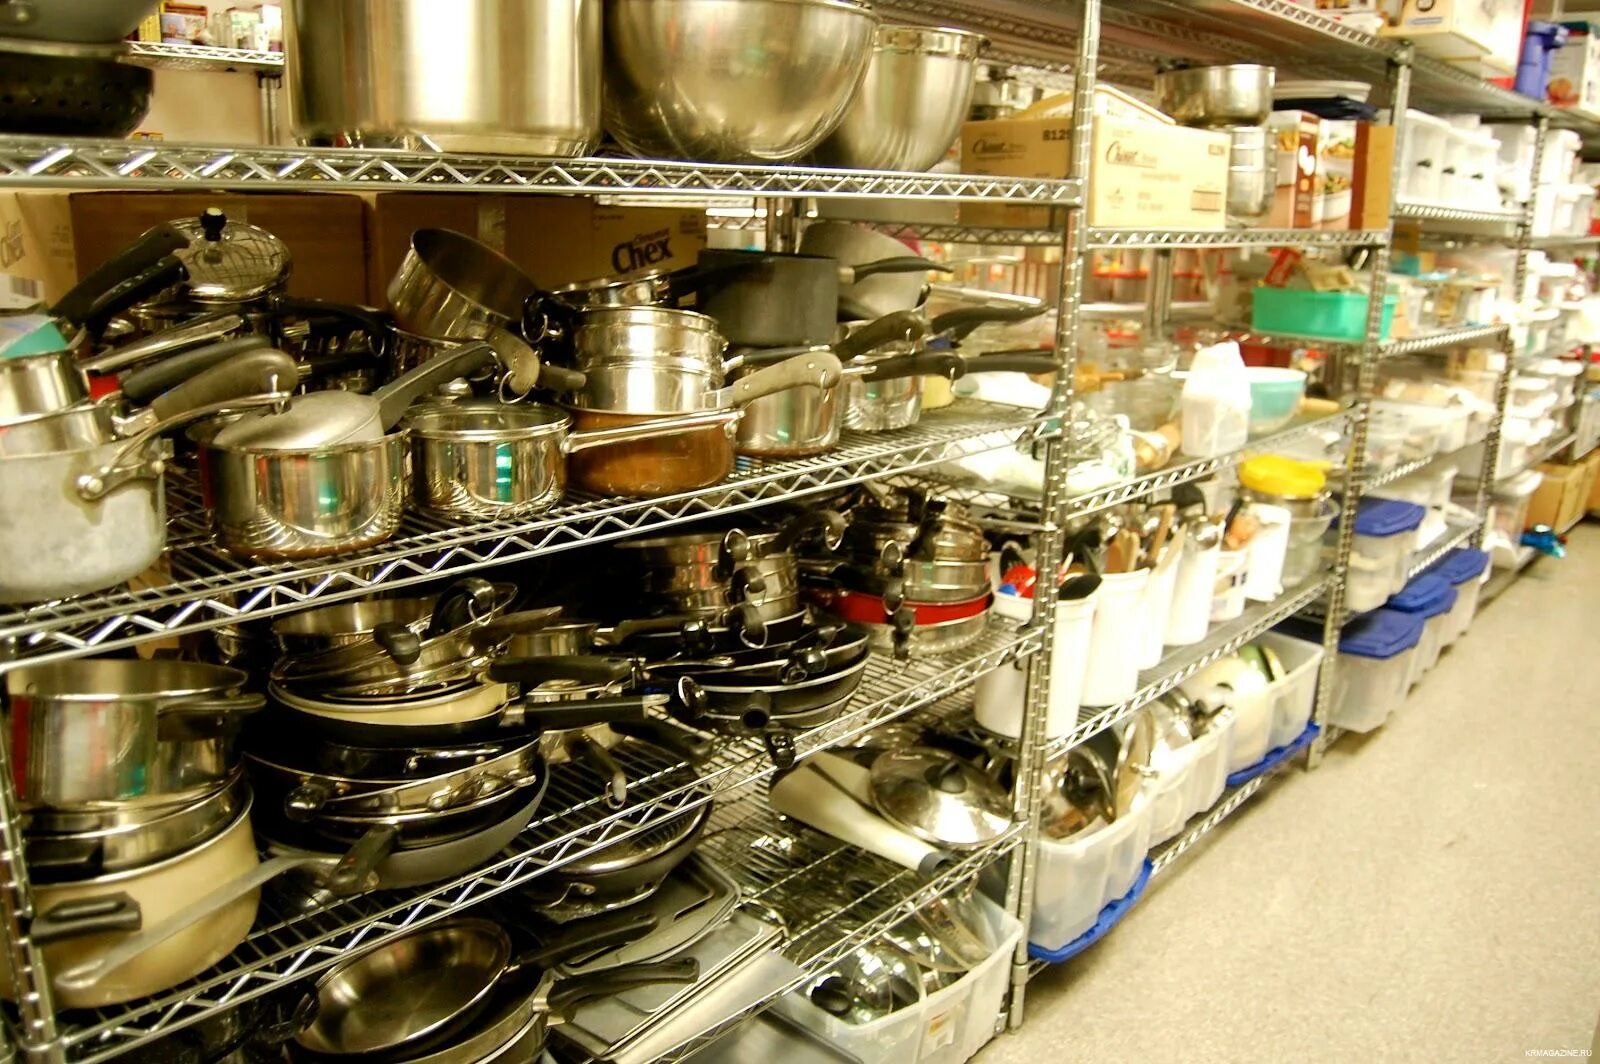 Магазин продажи посуды. Посуда-хозяйственные товары. Металлическая посуда. Выкладка металлической посуды. Прилавки с посудой.